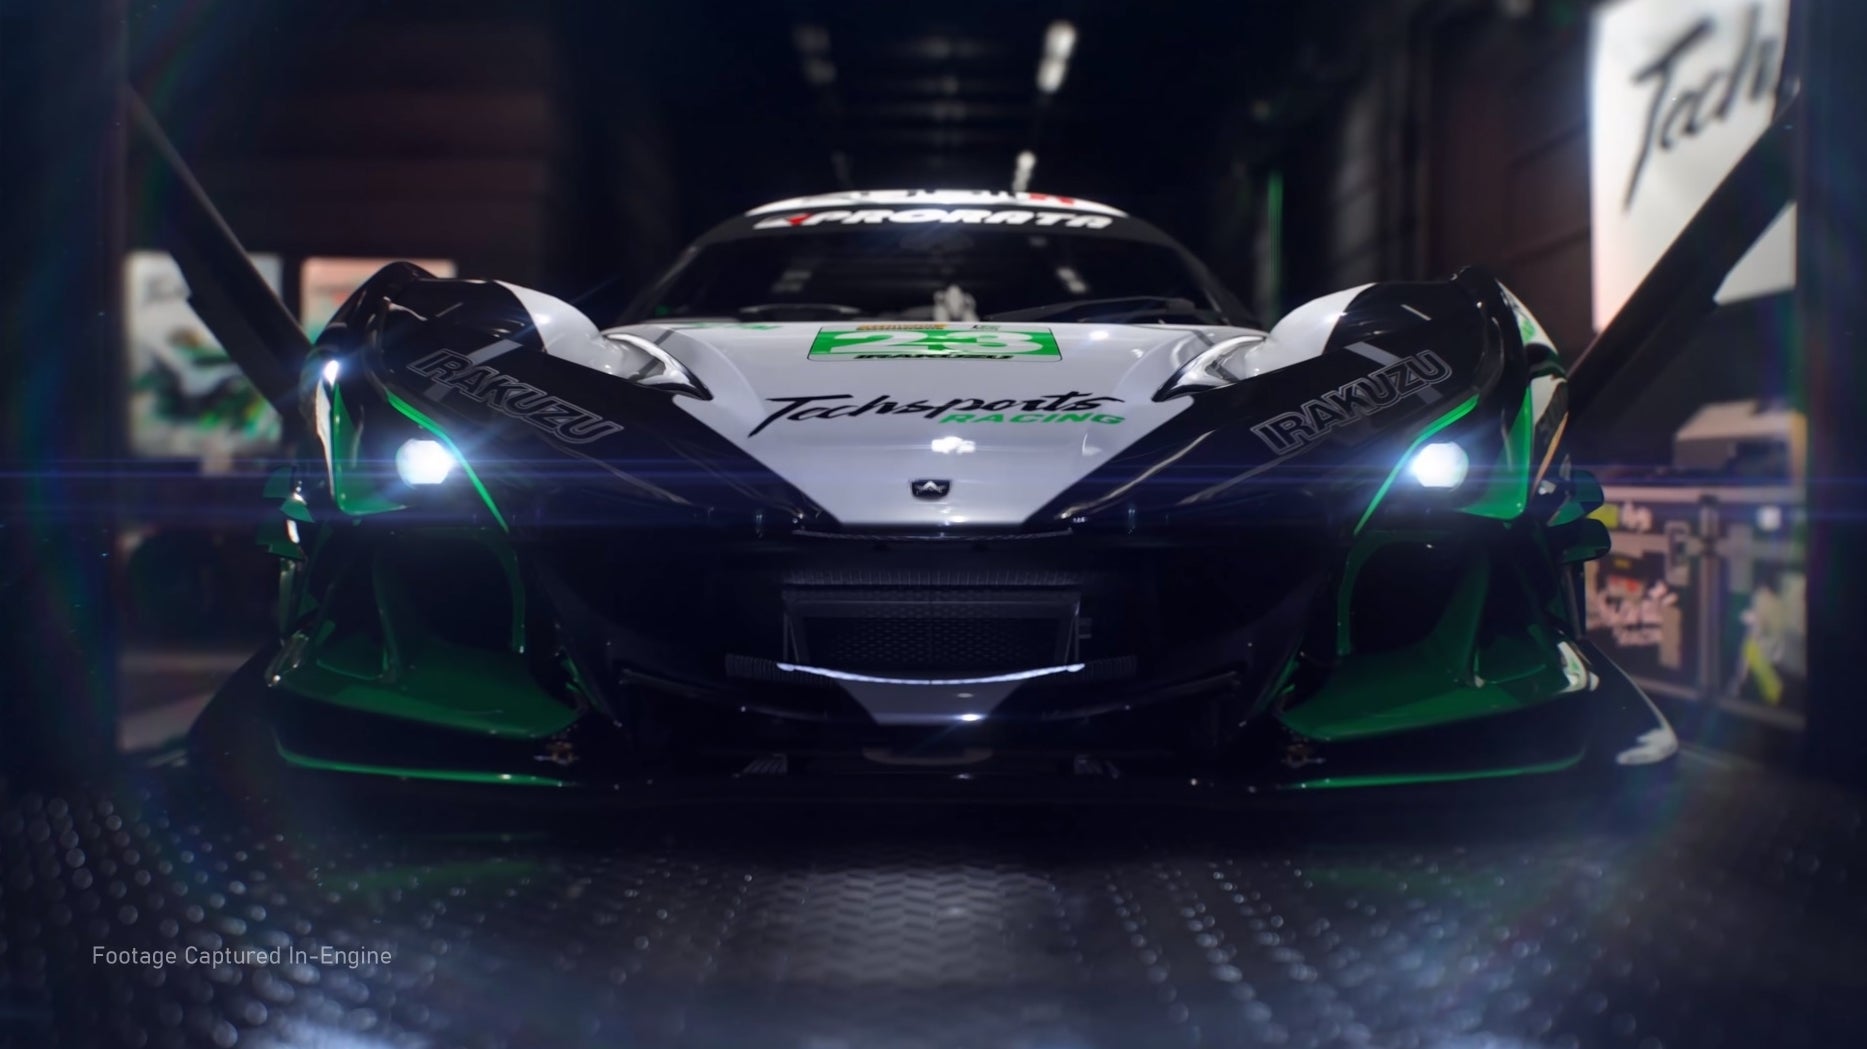 Immagine di Forza Motorsport: novità dal Forza Monthly ma l'attesa è ancora lunga